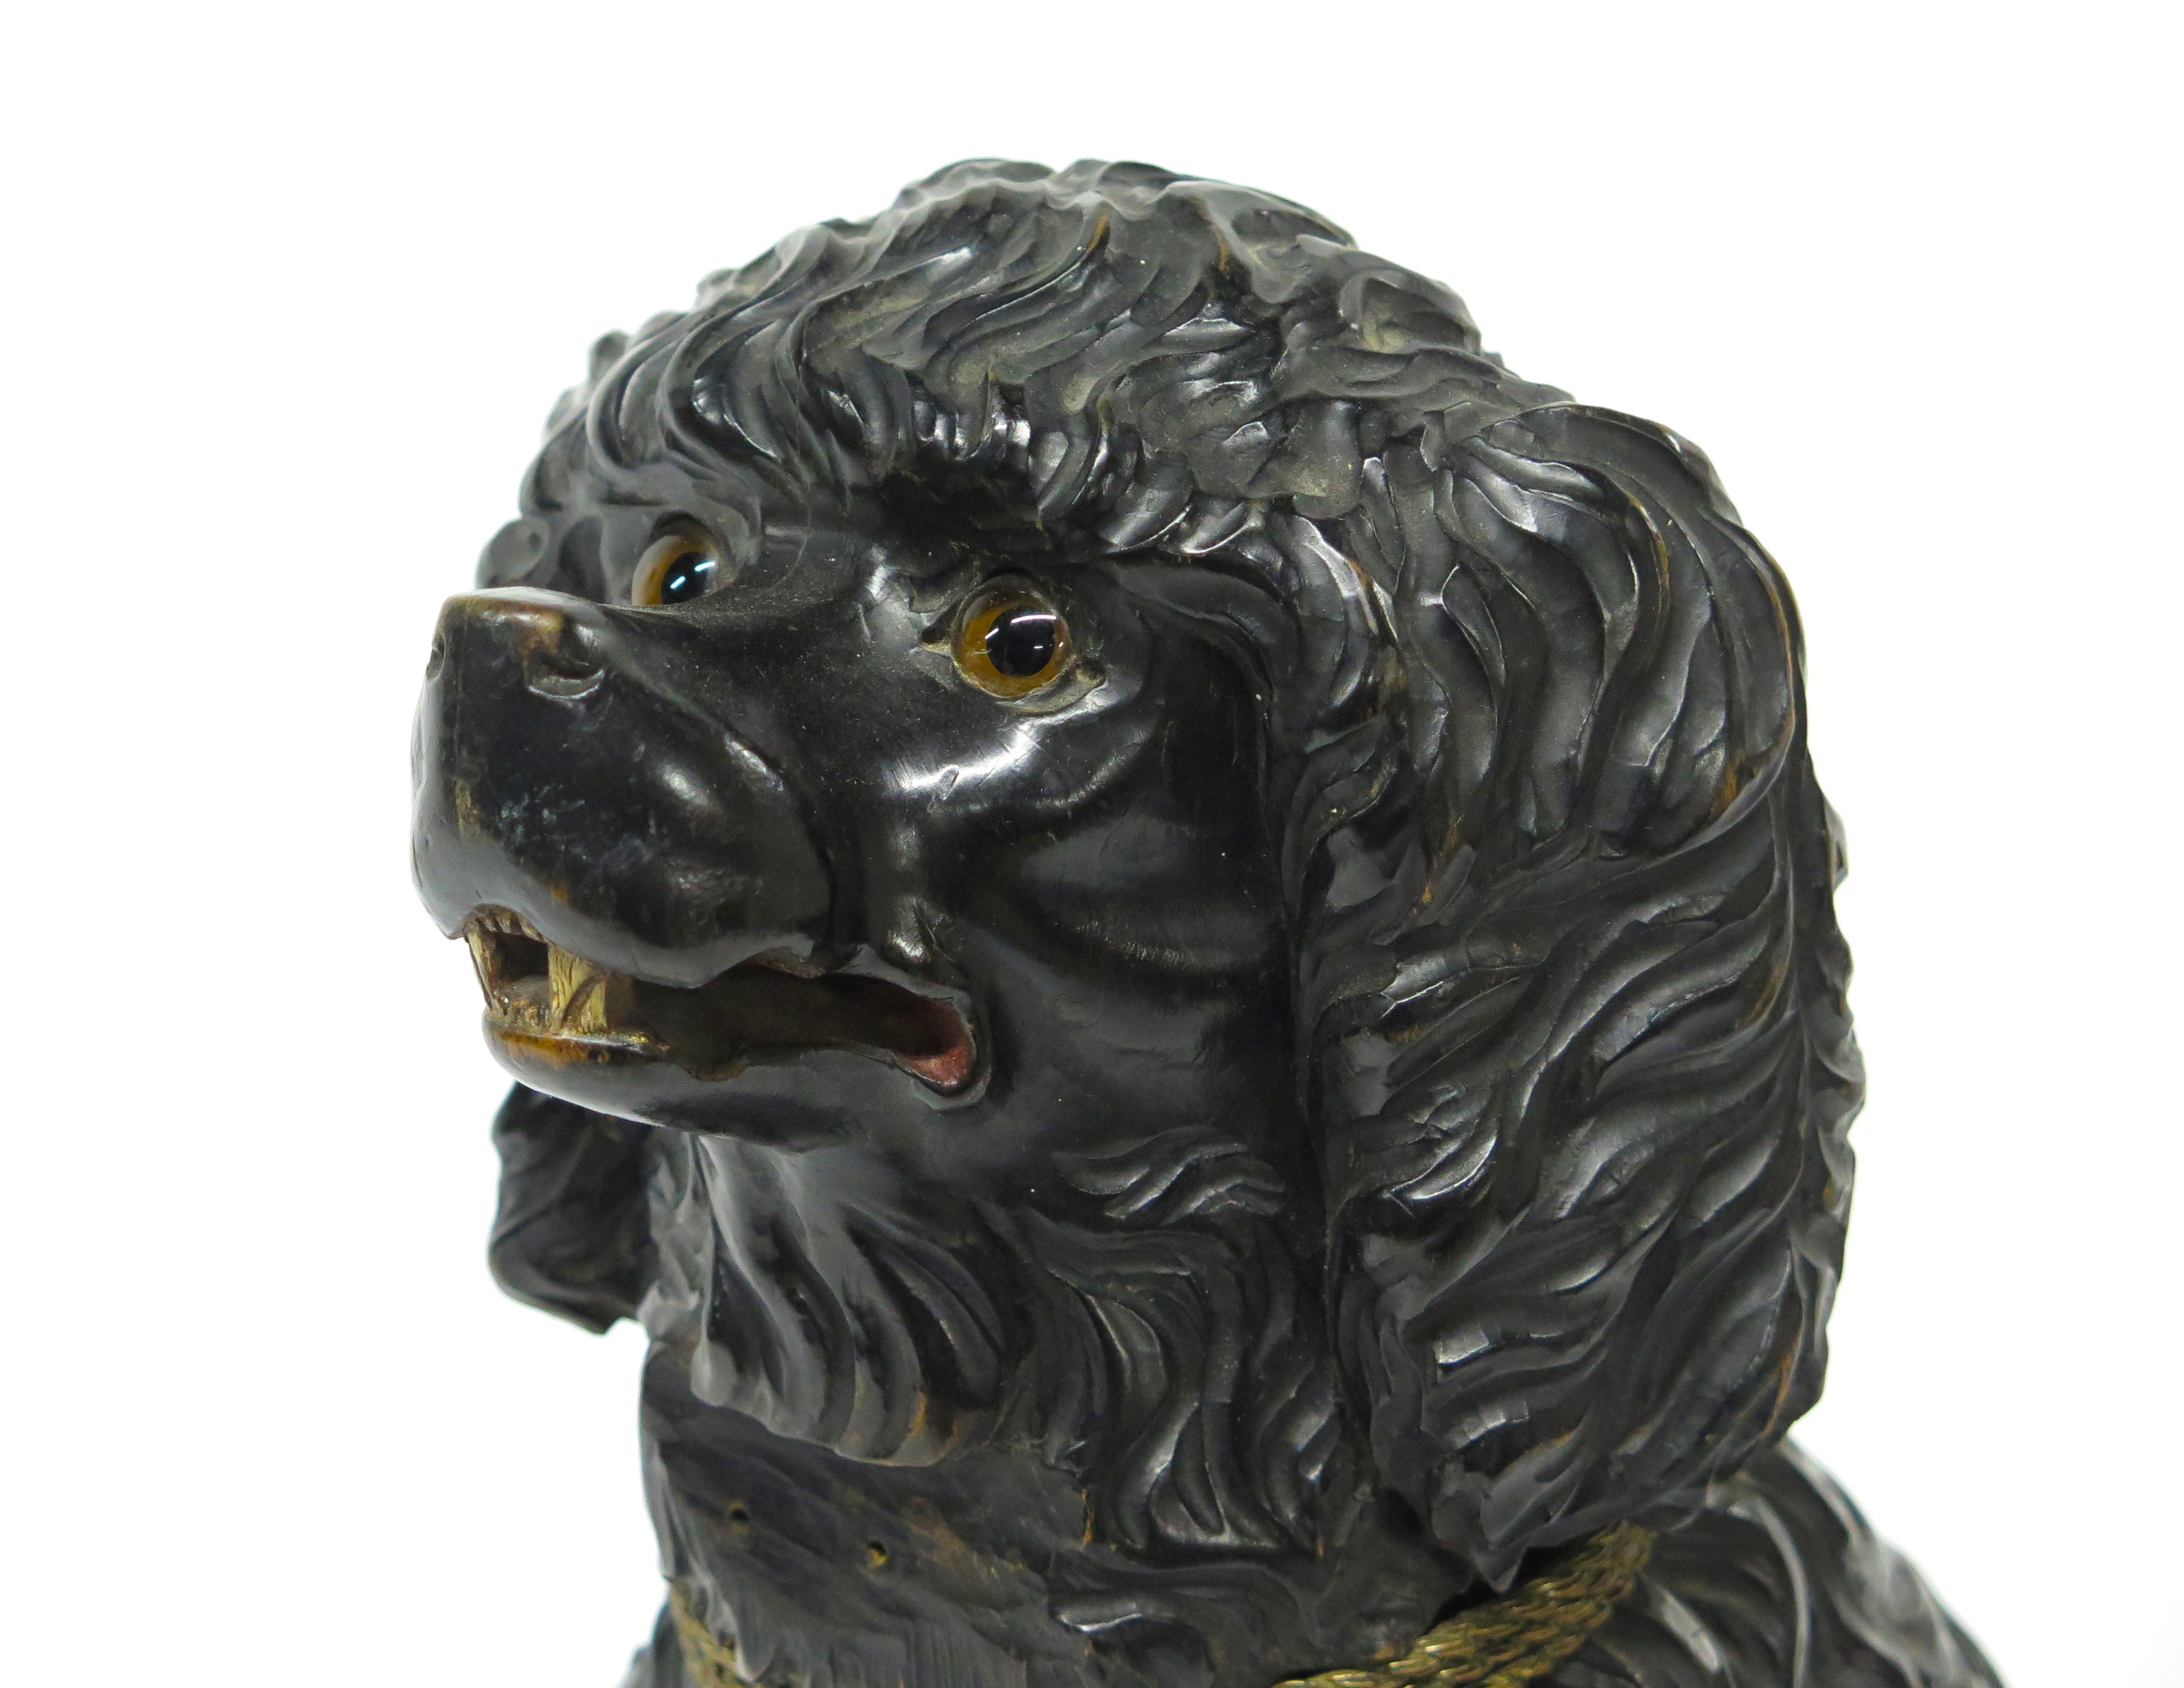 Exceptionally Carved Black Forest Poodle Dog Sculpture